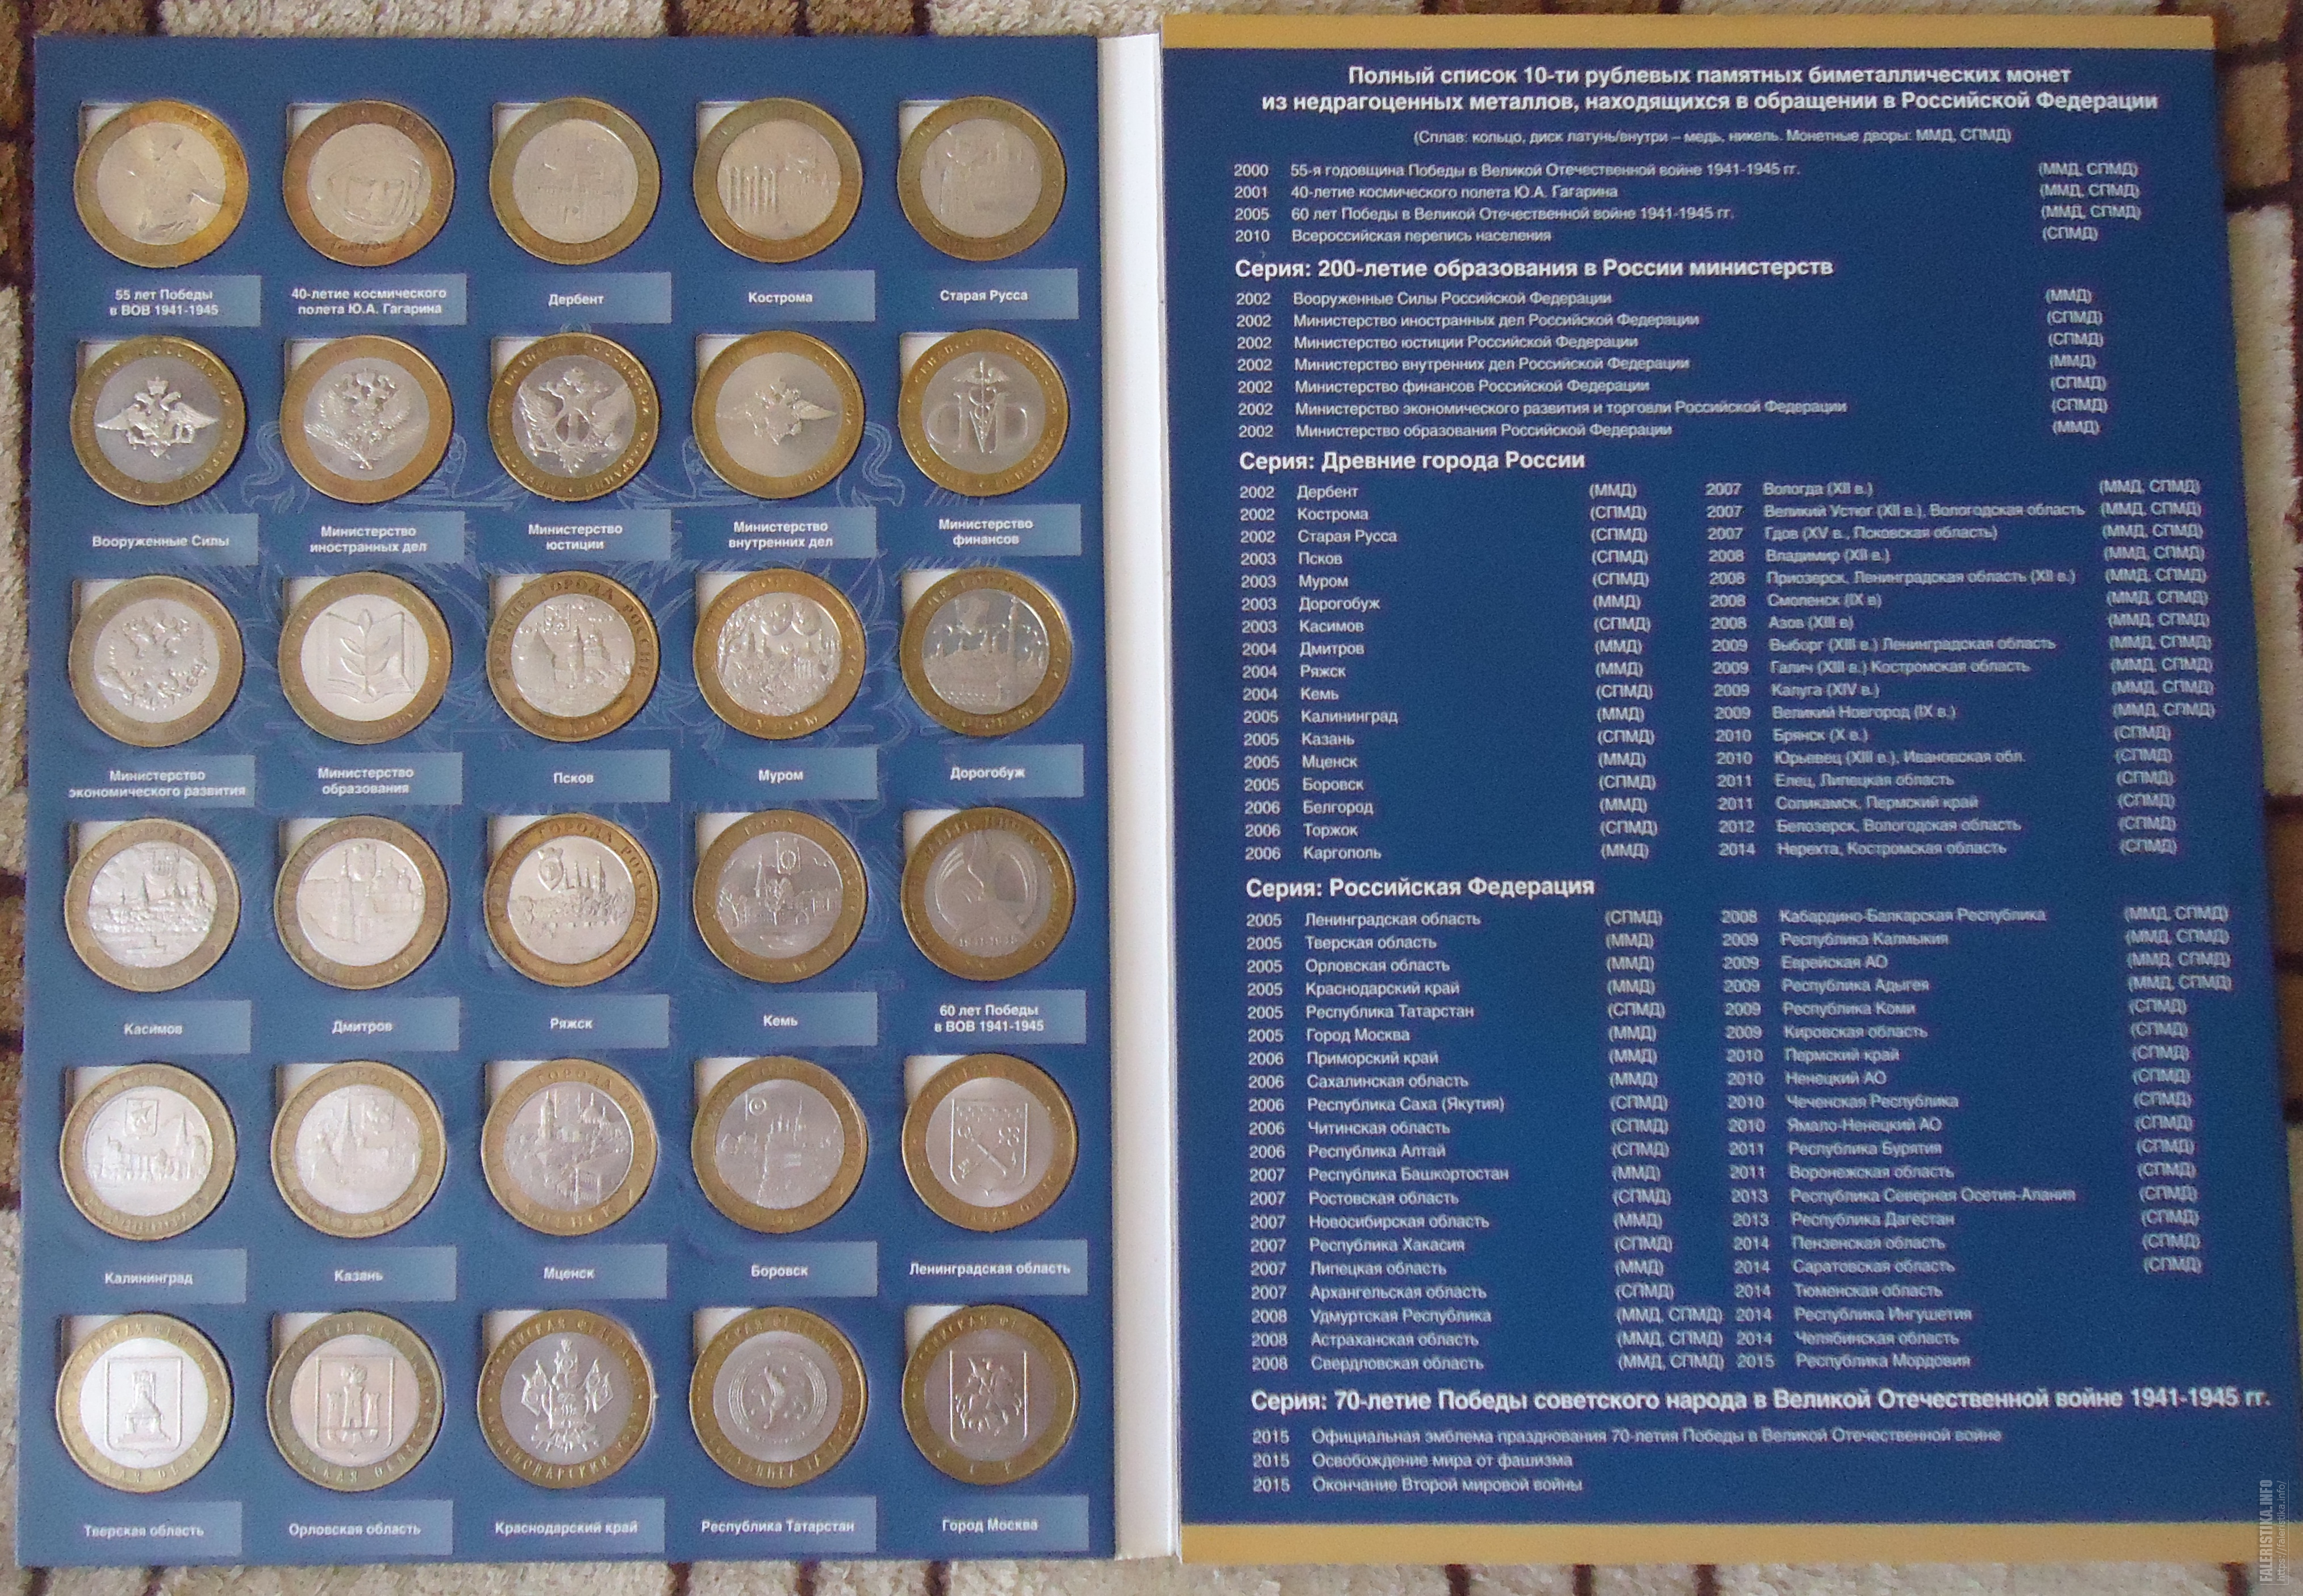 10 рублей биметалл список всех монет. Полная коллекция 10 рублевых монет Биметалл. Таблица монет 10 рублей Биметалл. Юбилейные 10 рублевые монеты снежный Барс.